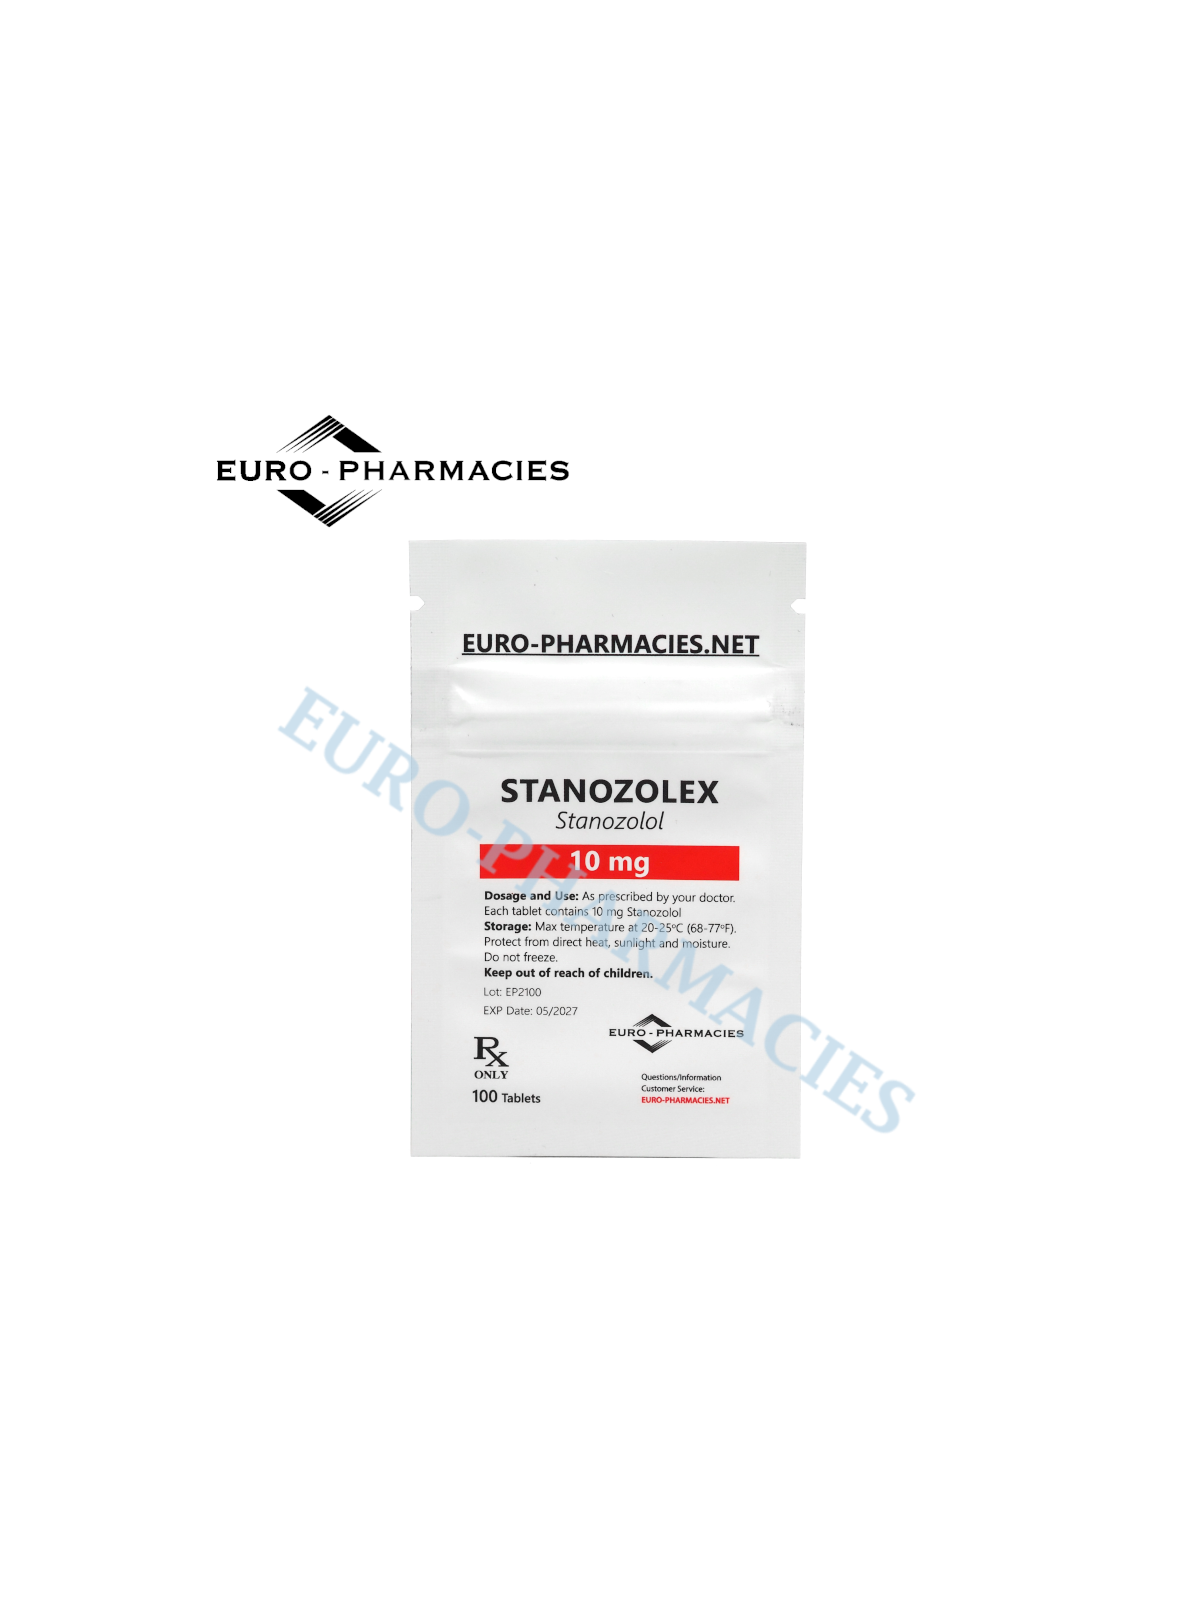 Stanozolex (Winstrol) - 10mg/tab, 100 pills/bag - Euro-Pharmacies - USA